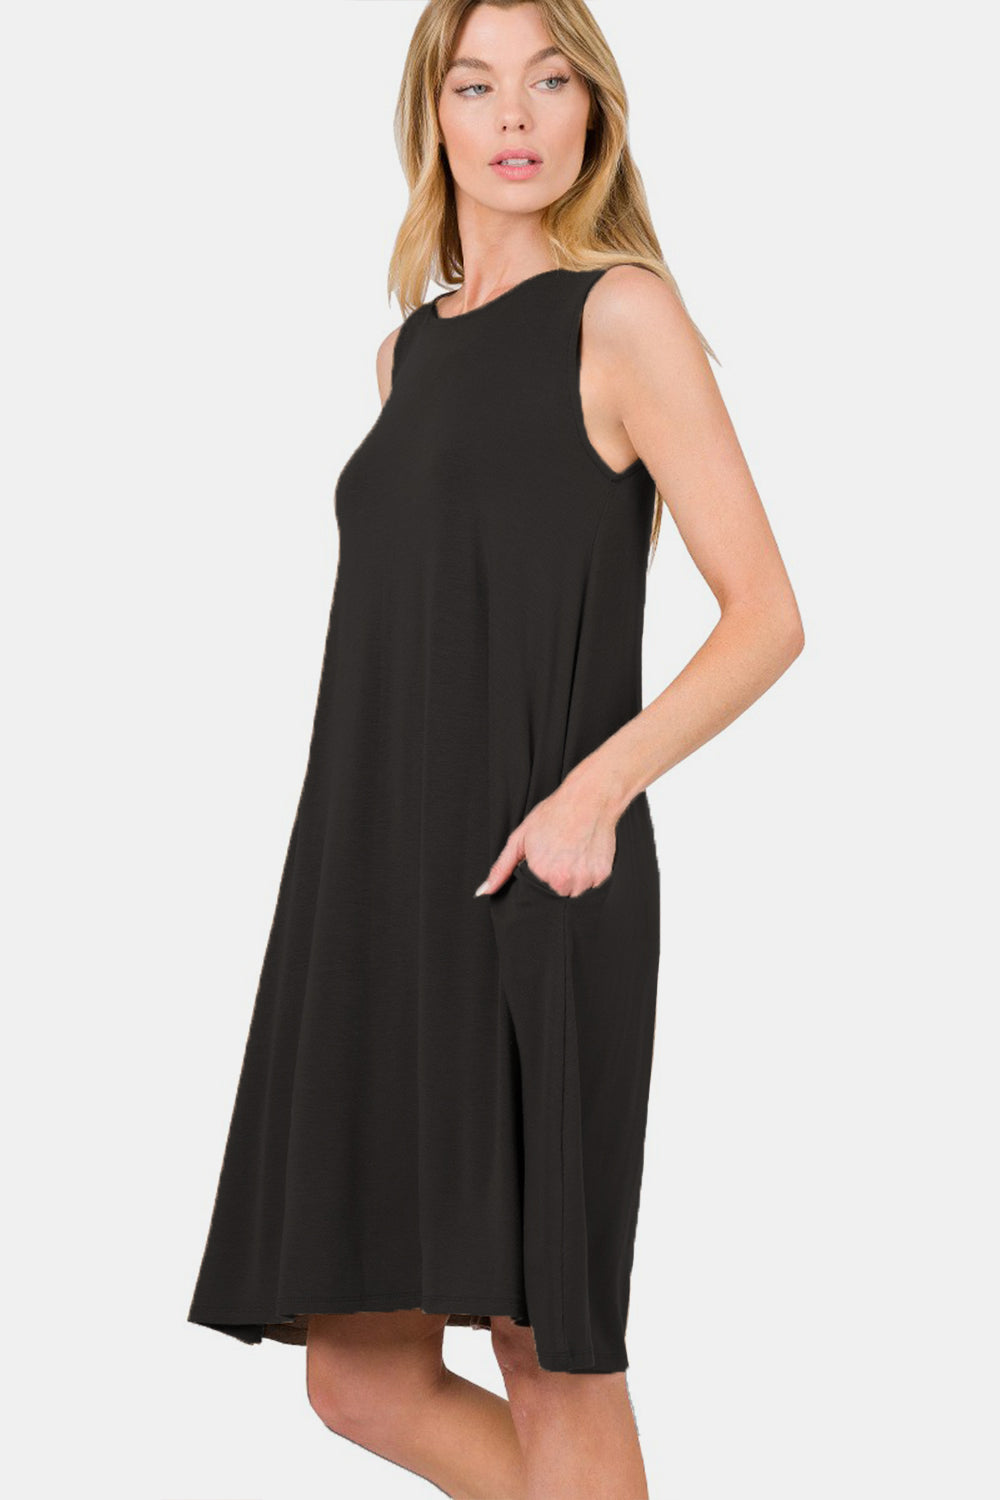 Zenana Full Size Sleeveless Flared Dress with Side Pockets - Tigbuls Variety Fashion